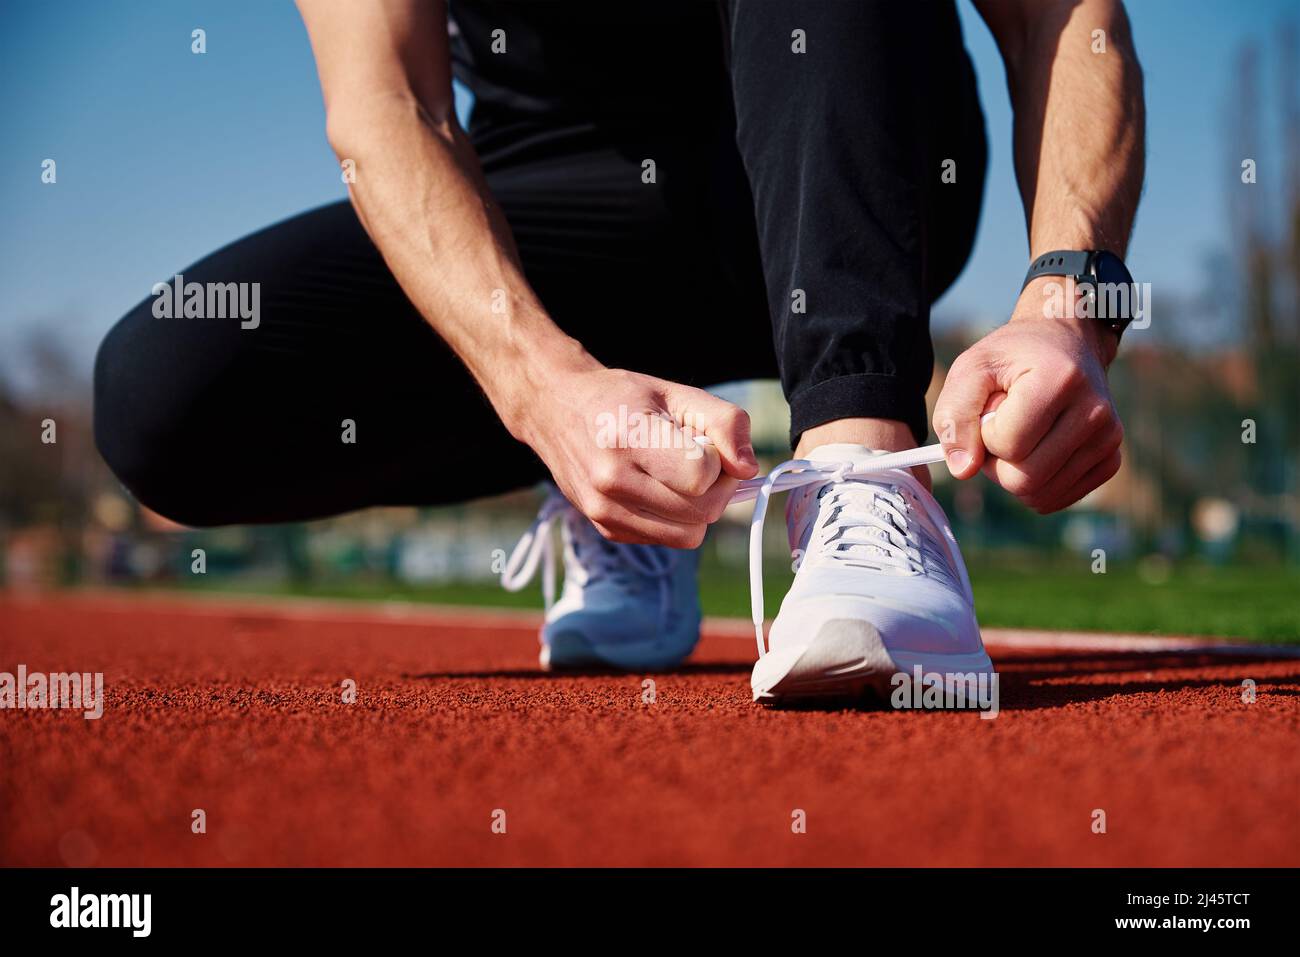 Las zapatillas de running para hombre en color blanco se preparan para correr en la pista del estadio. Manos masculinas atadas en zapatillas deportivas correr. Buen estado físico y estilo de